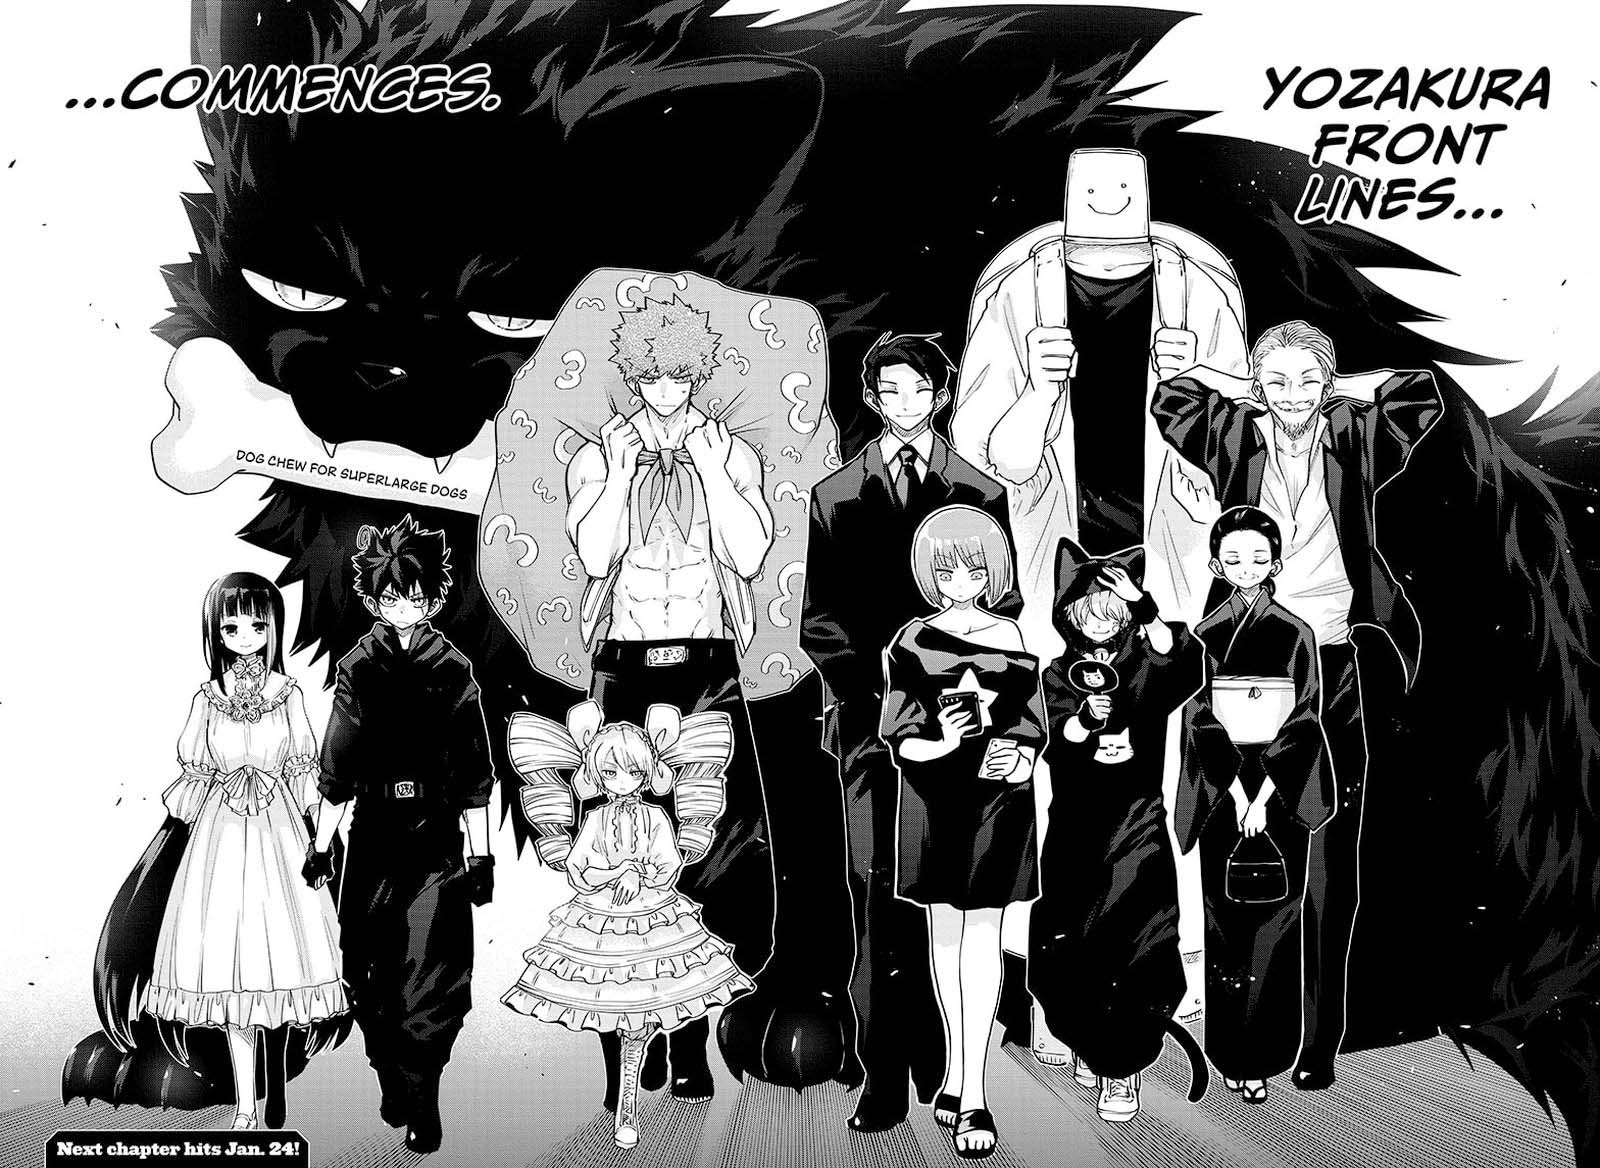 Mission Yozakura Family 66 17